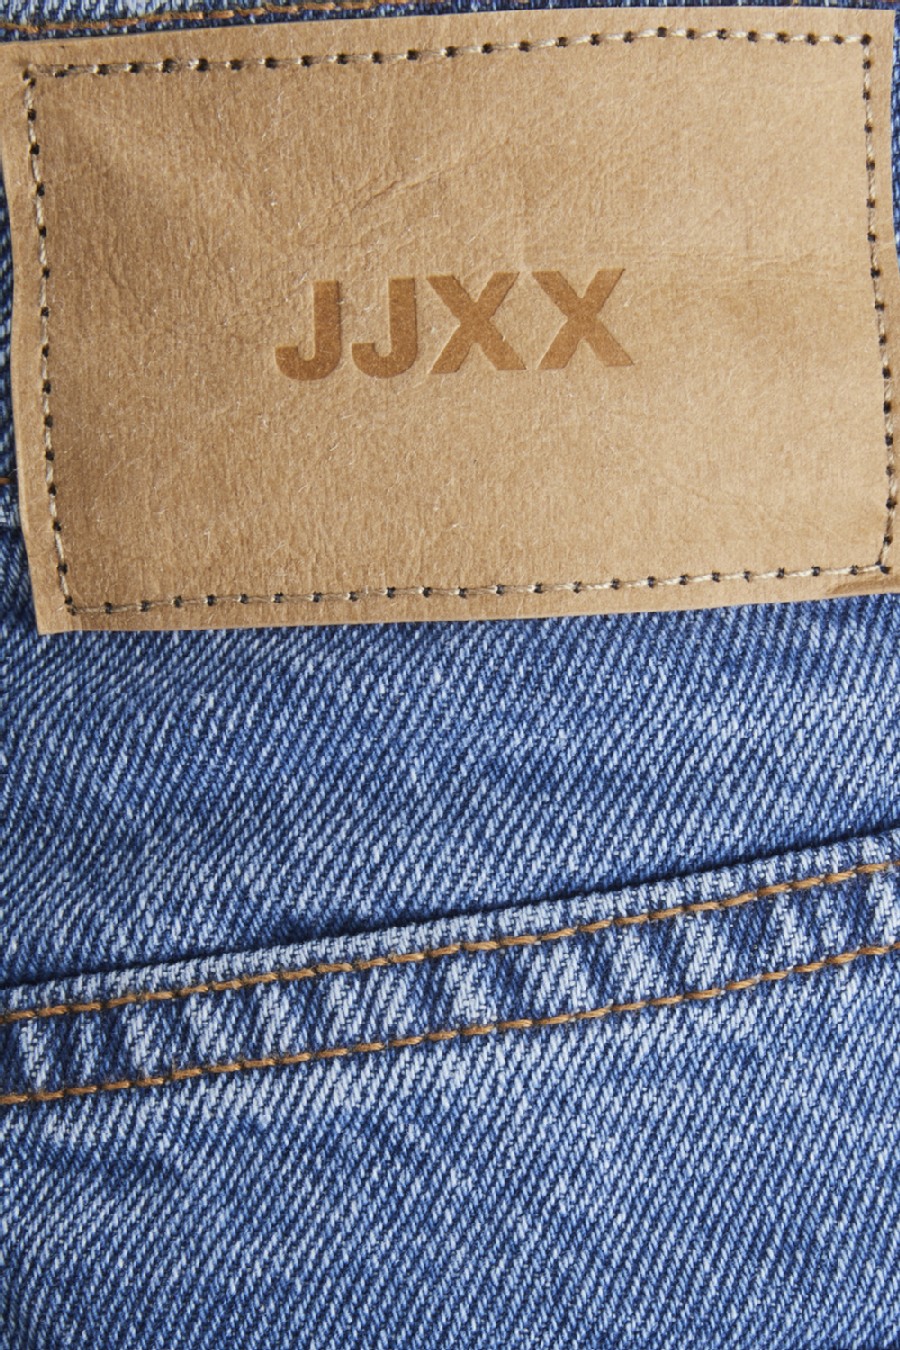 Jeans JJXX 12203895-Medium-Blue